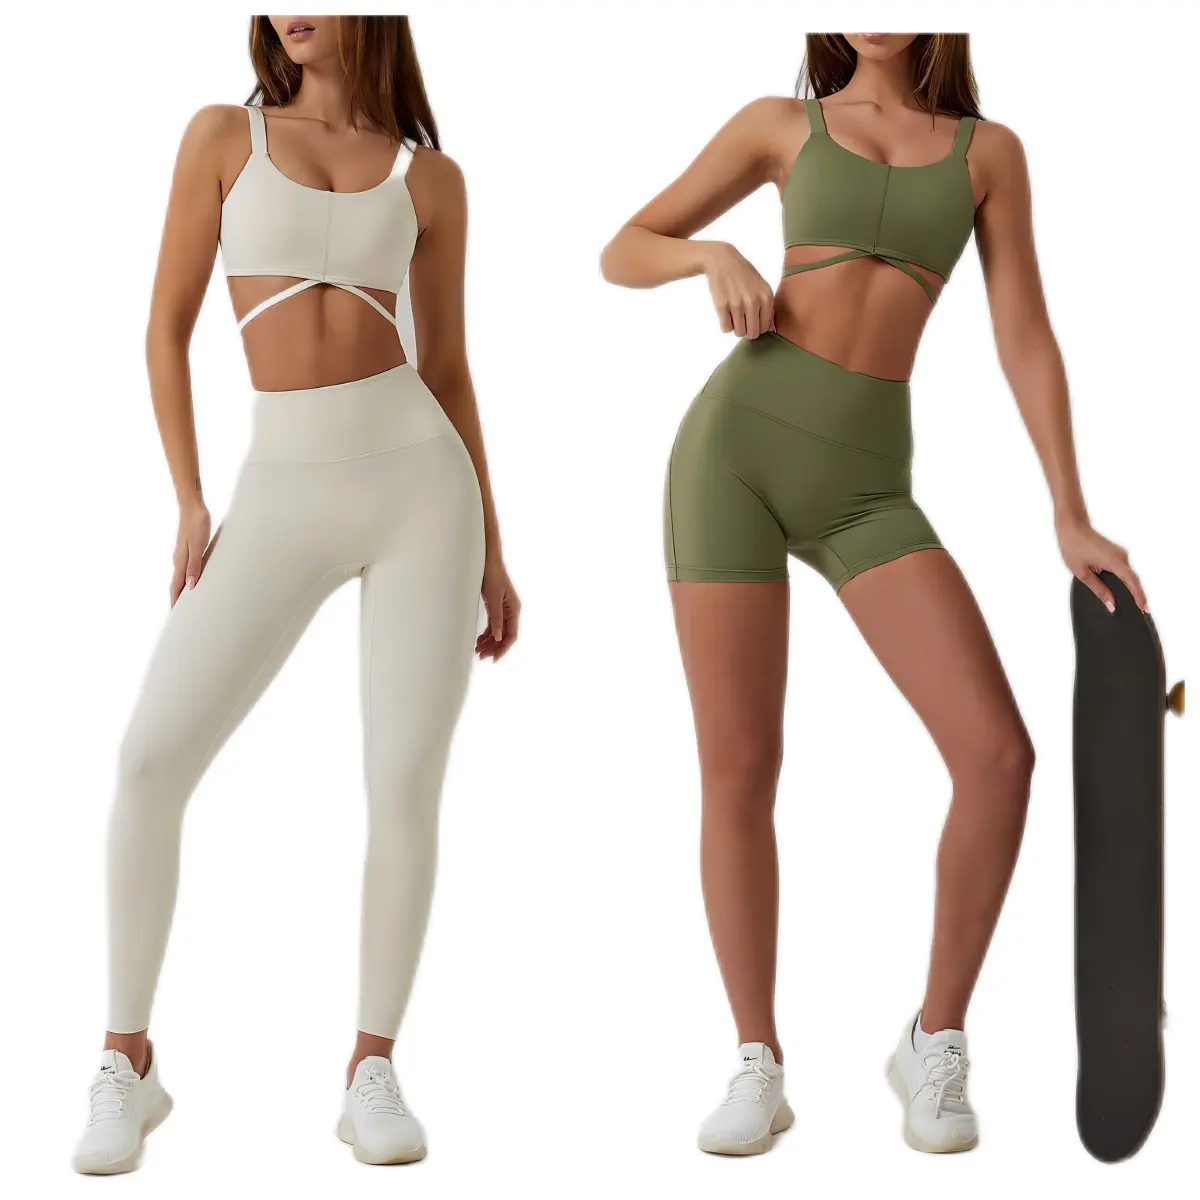 Nuovo tessuto riciclato donna Stretch Compression Quick Dry Stretch Active Bra e Shorts Leggings Yoga Set